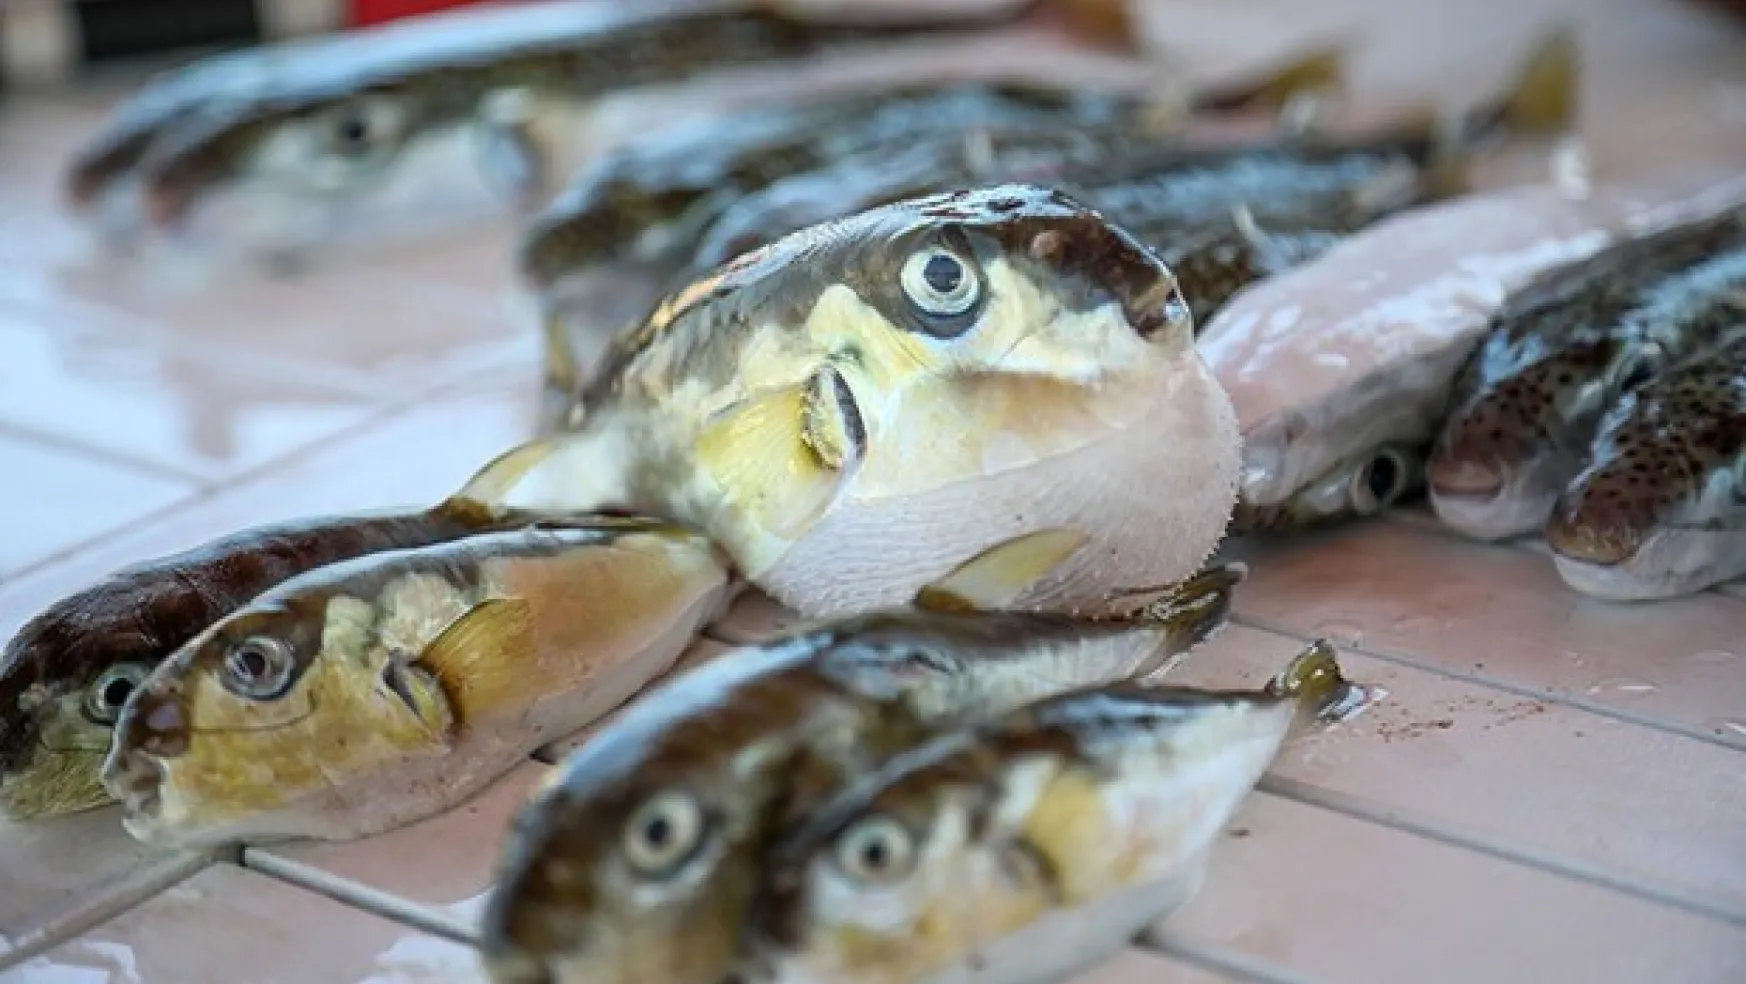 Antalya'da şok iddia: Balon balığı 'mezgit' diye satılıyor!